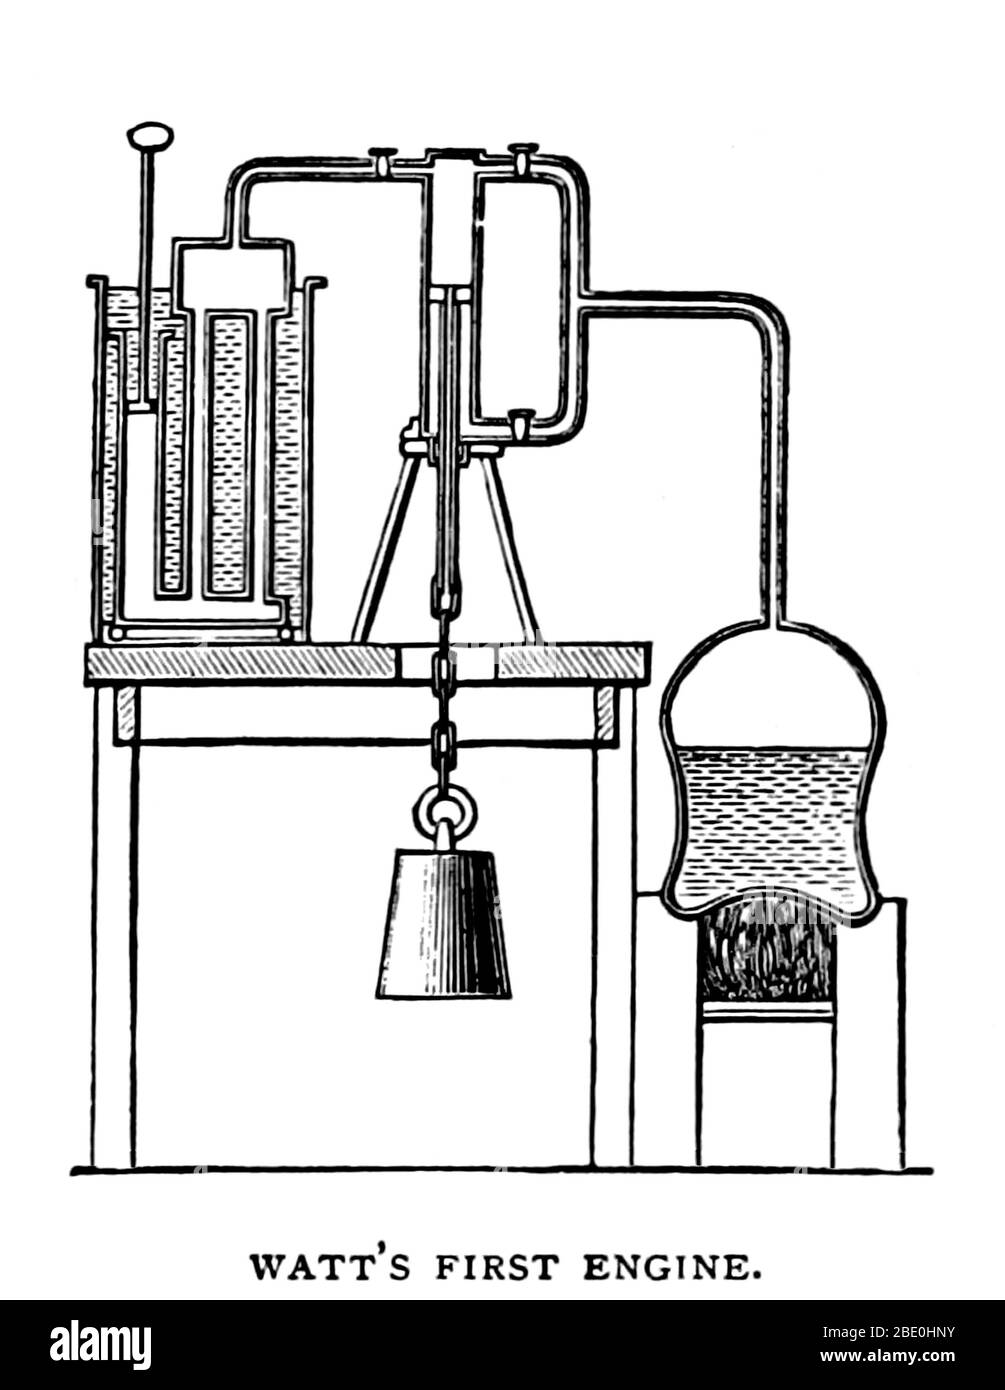 Watts, première machine à vapeur illustration tirée de la page 114 de "George Square, Glasgow ; et la vie de ceux que ses statues commémorent, etc' par Thomas (de Glascow) Somerville, 1891. Le moteur à vapeur Watt (autrement connu sous le nom de Boulton et Watt moteur à vapeur) a été le premier type de machine à vapeur à faire usage de la vapeur à une pression atmosphérique juste au-dessus de conduire le piston avec l'aide d'un vide partiel. L'amélioration de la conception du moteur, le 1712 Newcomen Watts moteur à vapeur, développé de façon sporadique à partir de 1763 à 1775, était la prochaine grande étape dans le développement de la machine à vapeur. Watt's deux Banque D'Images